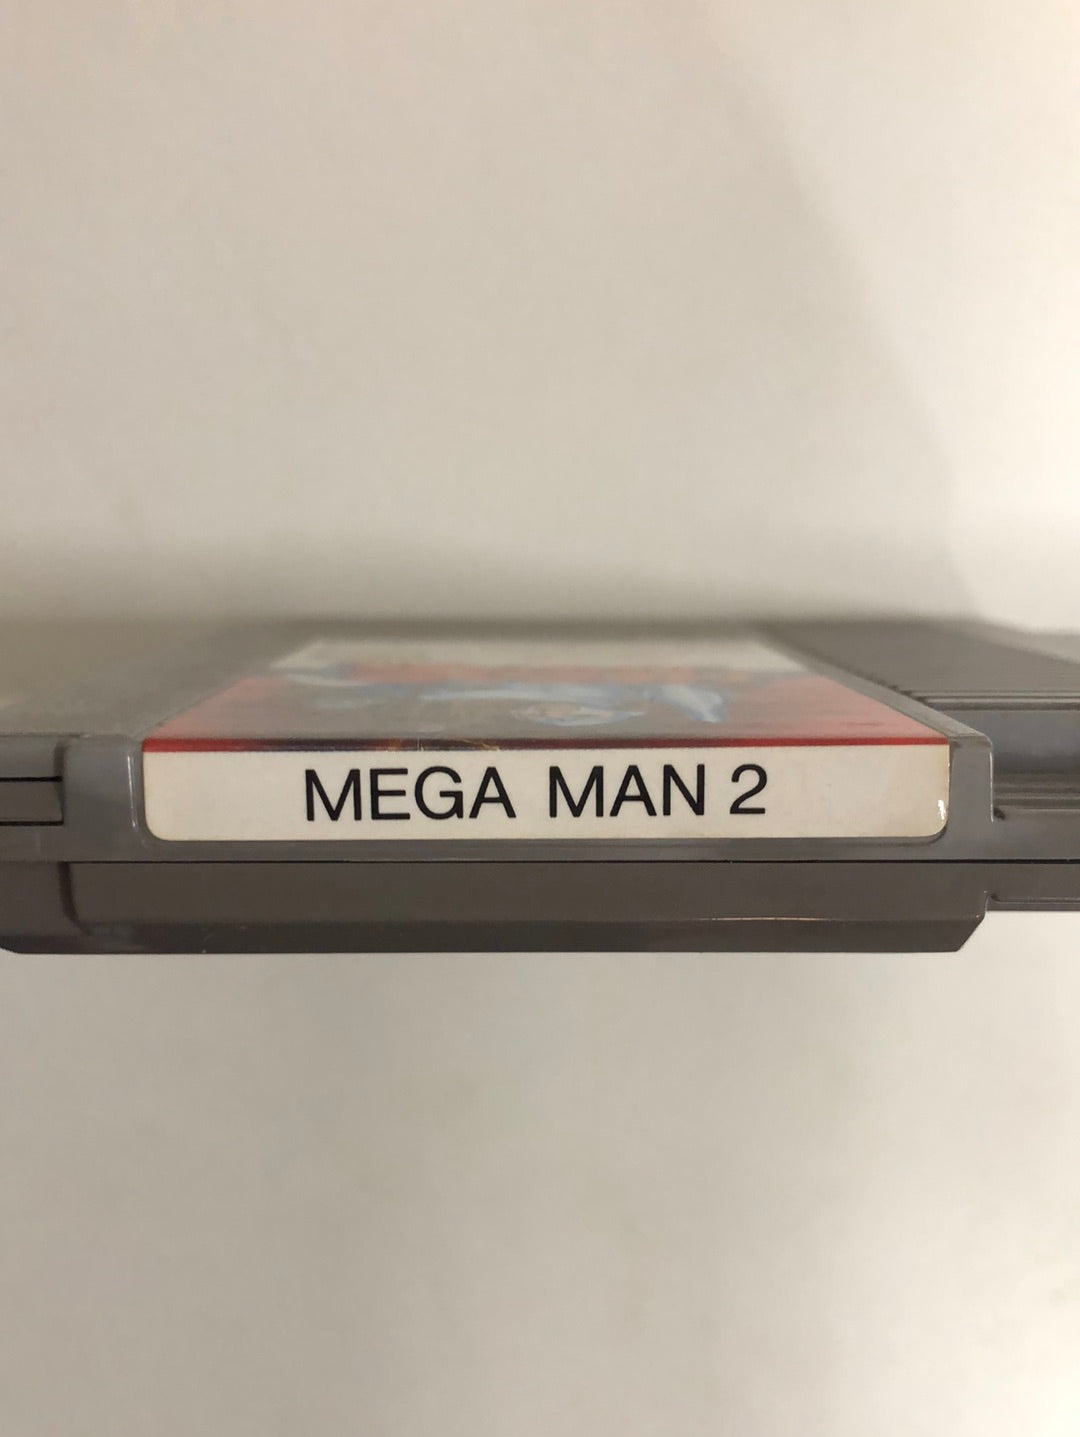 Mega man 2 FRA Nintendo nes